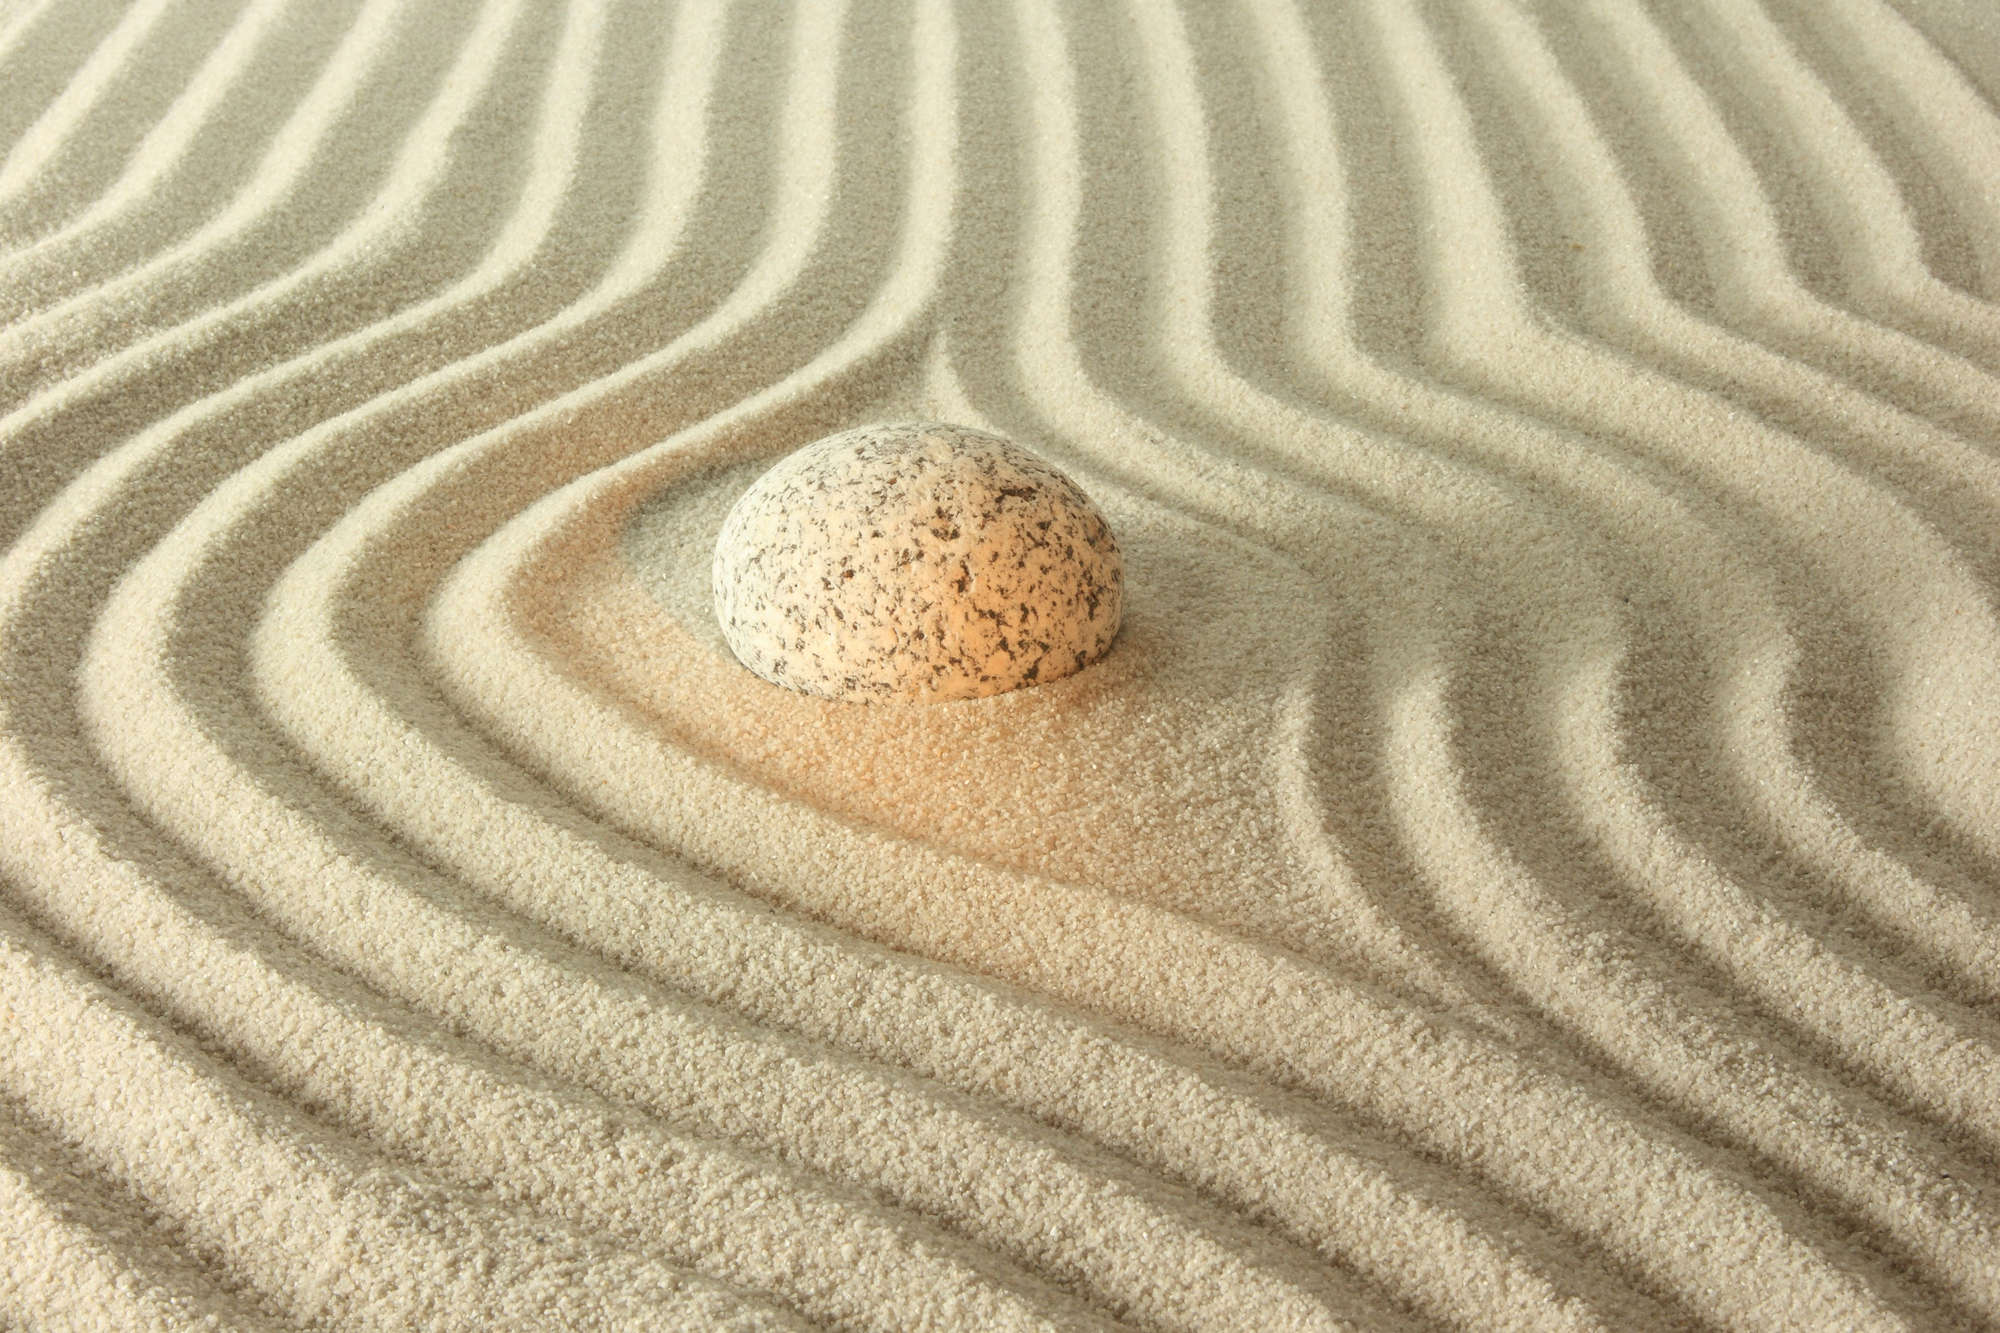             Spa photo papier peint pierre jaune dans le sable strié sur nacre intissé lisse
        